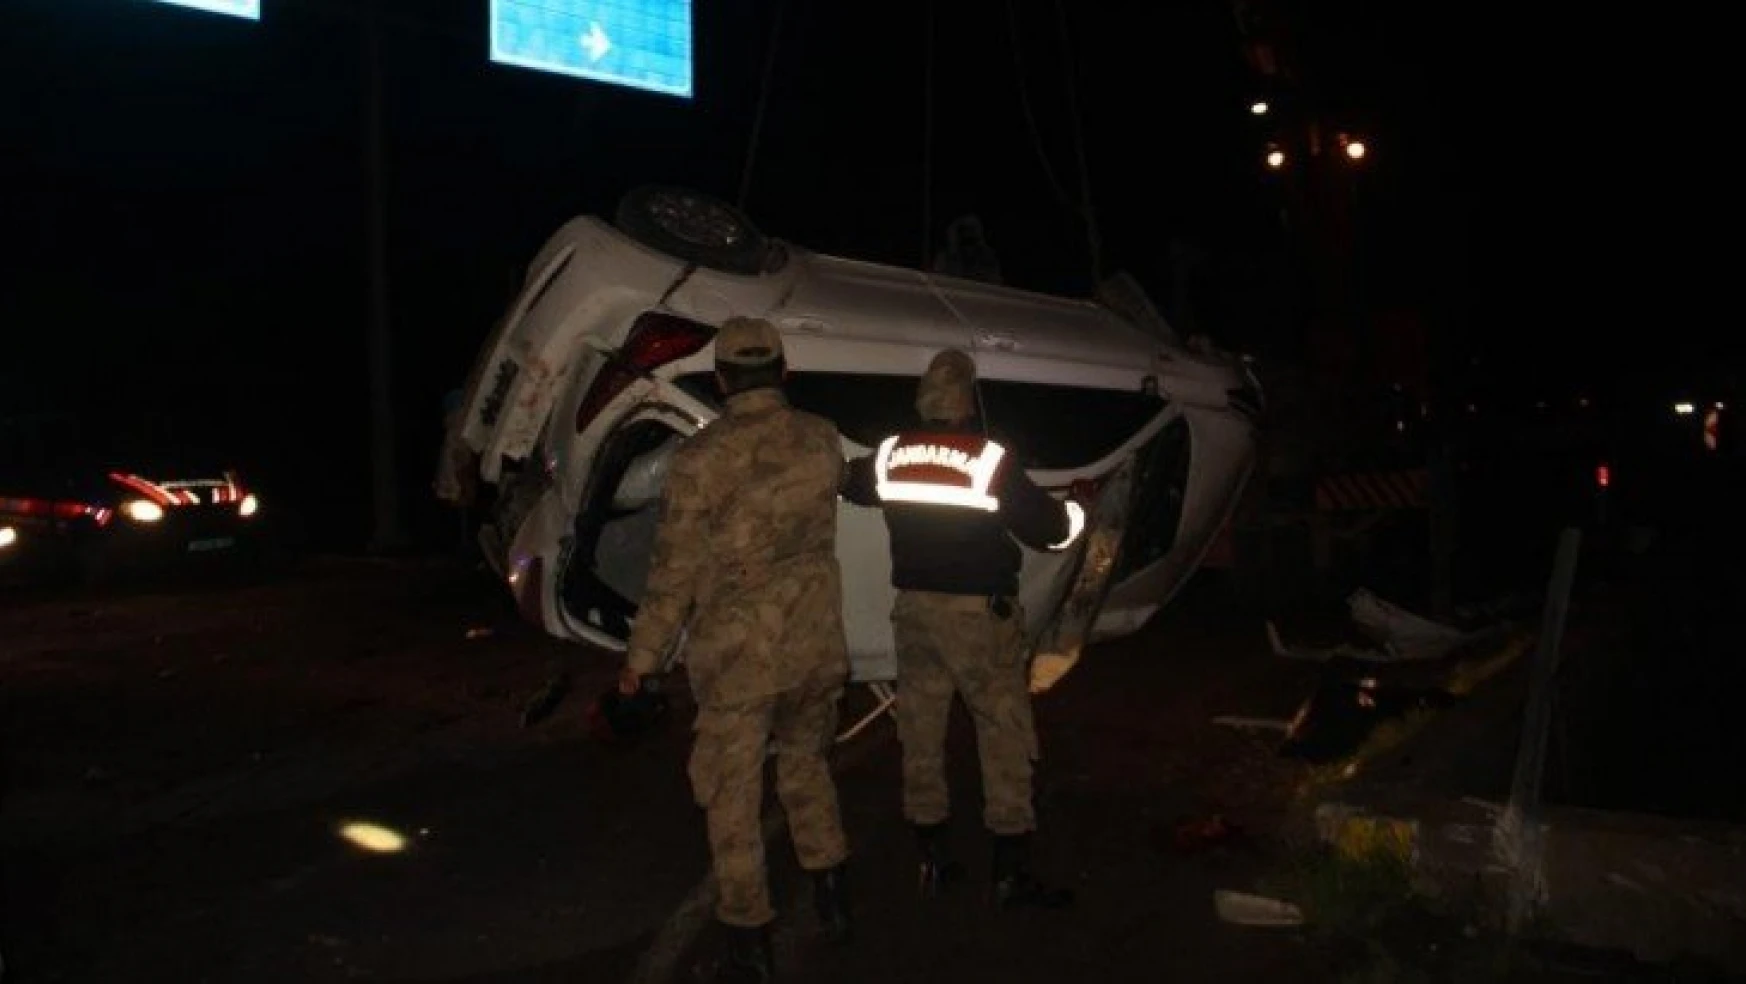 Kazada ölen 3 kişi Malatya'da defin edildi